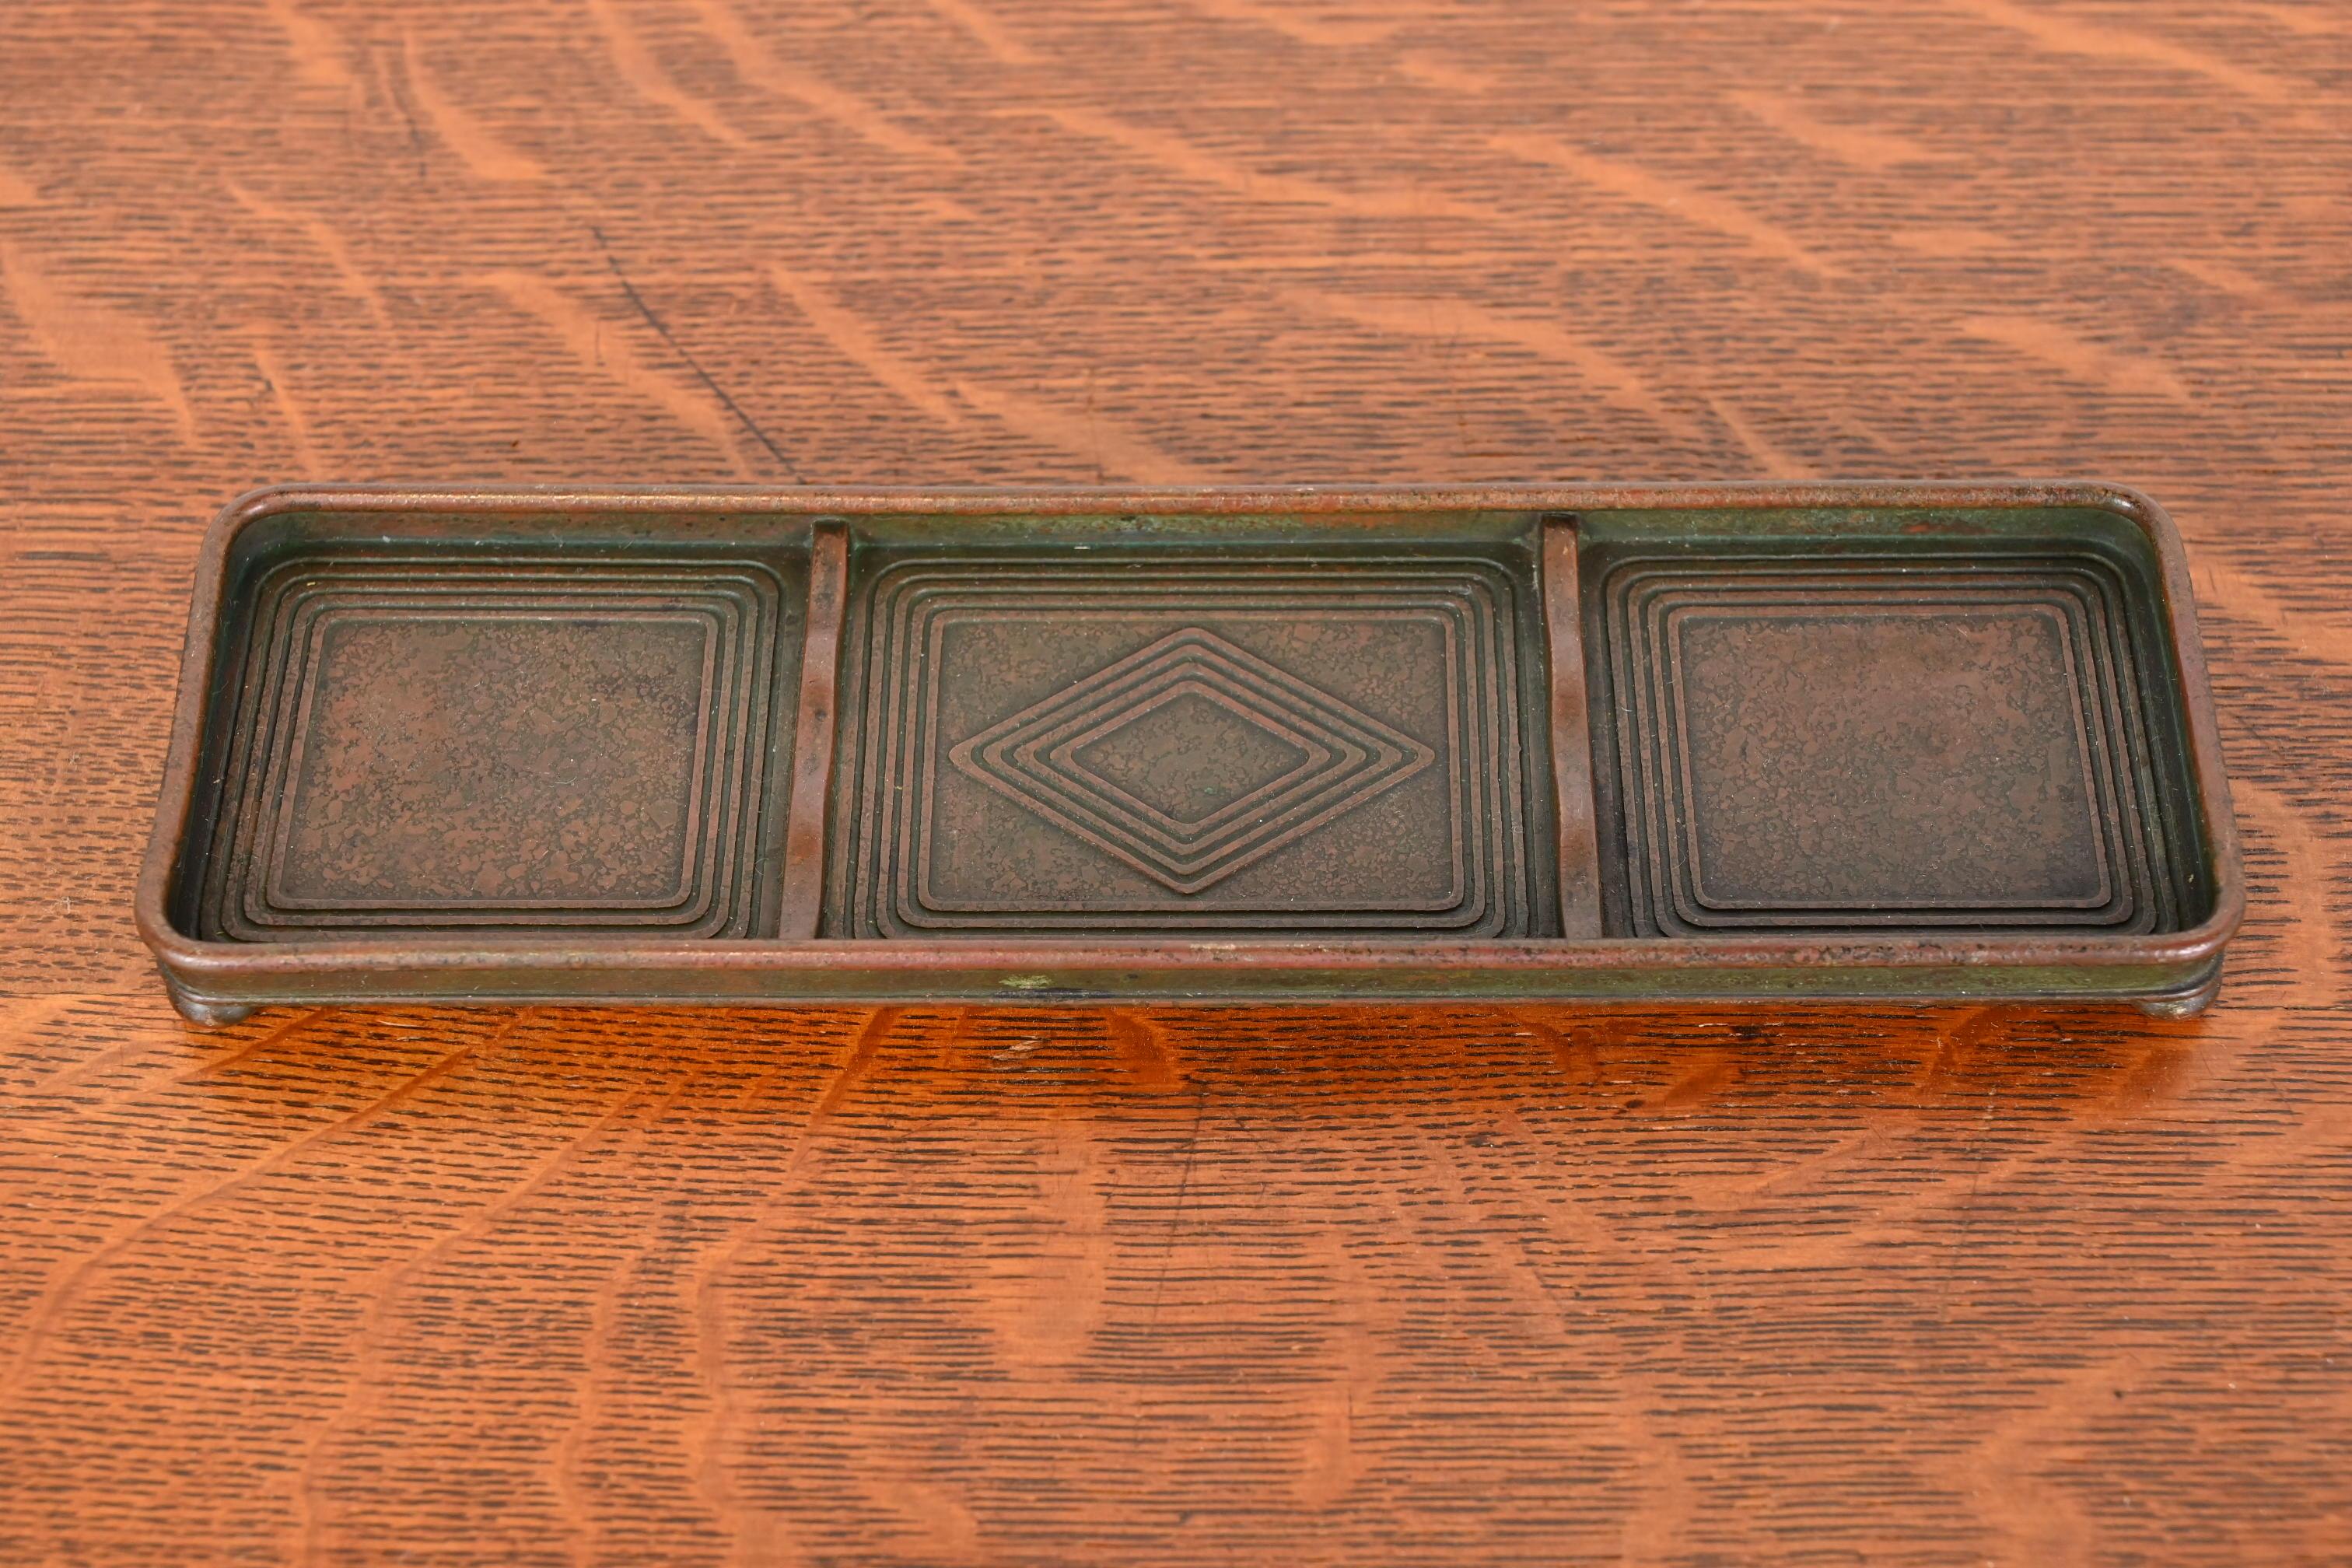 Eine herrliche antike Bronze Graduate Muster Schreibtisch Stift Tablett mit Grünspan grüner Patina

Von Tiffany Studios (signiert auf der Unterseite)

New York, USA, Anfang des 20. Jahrhunderts

Maße: 8,75 